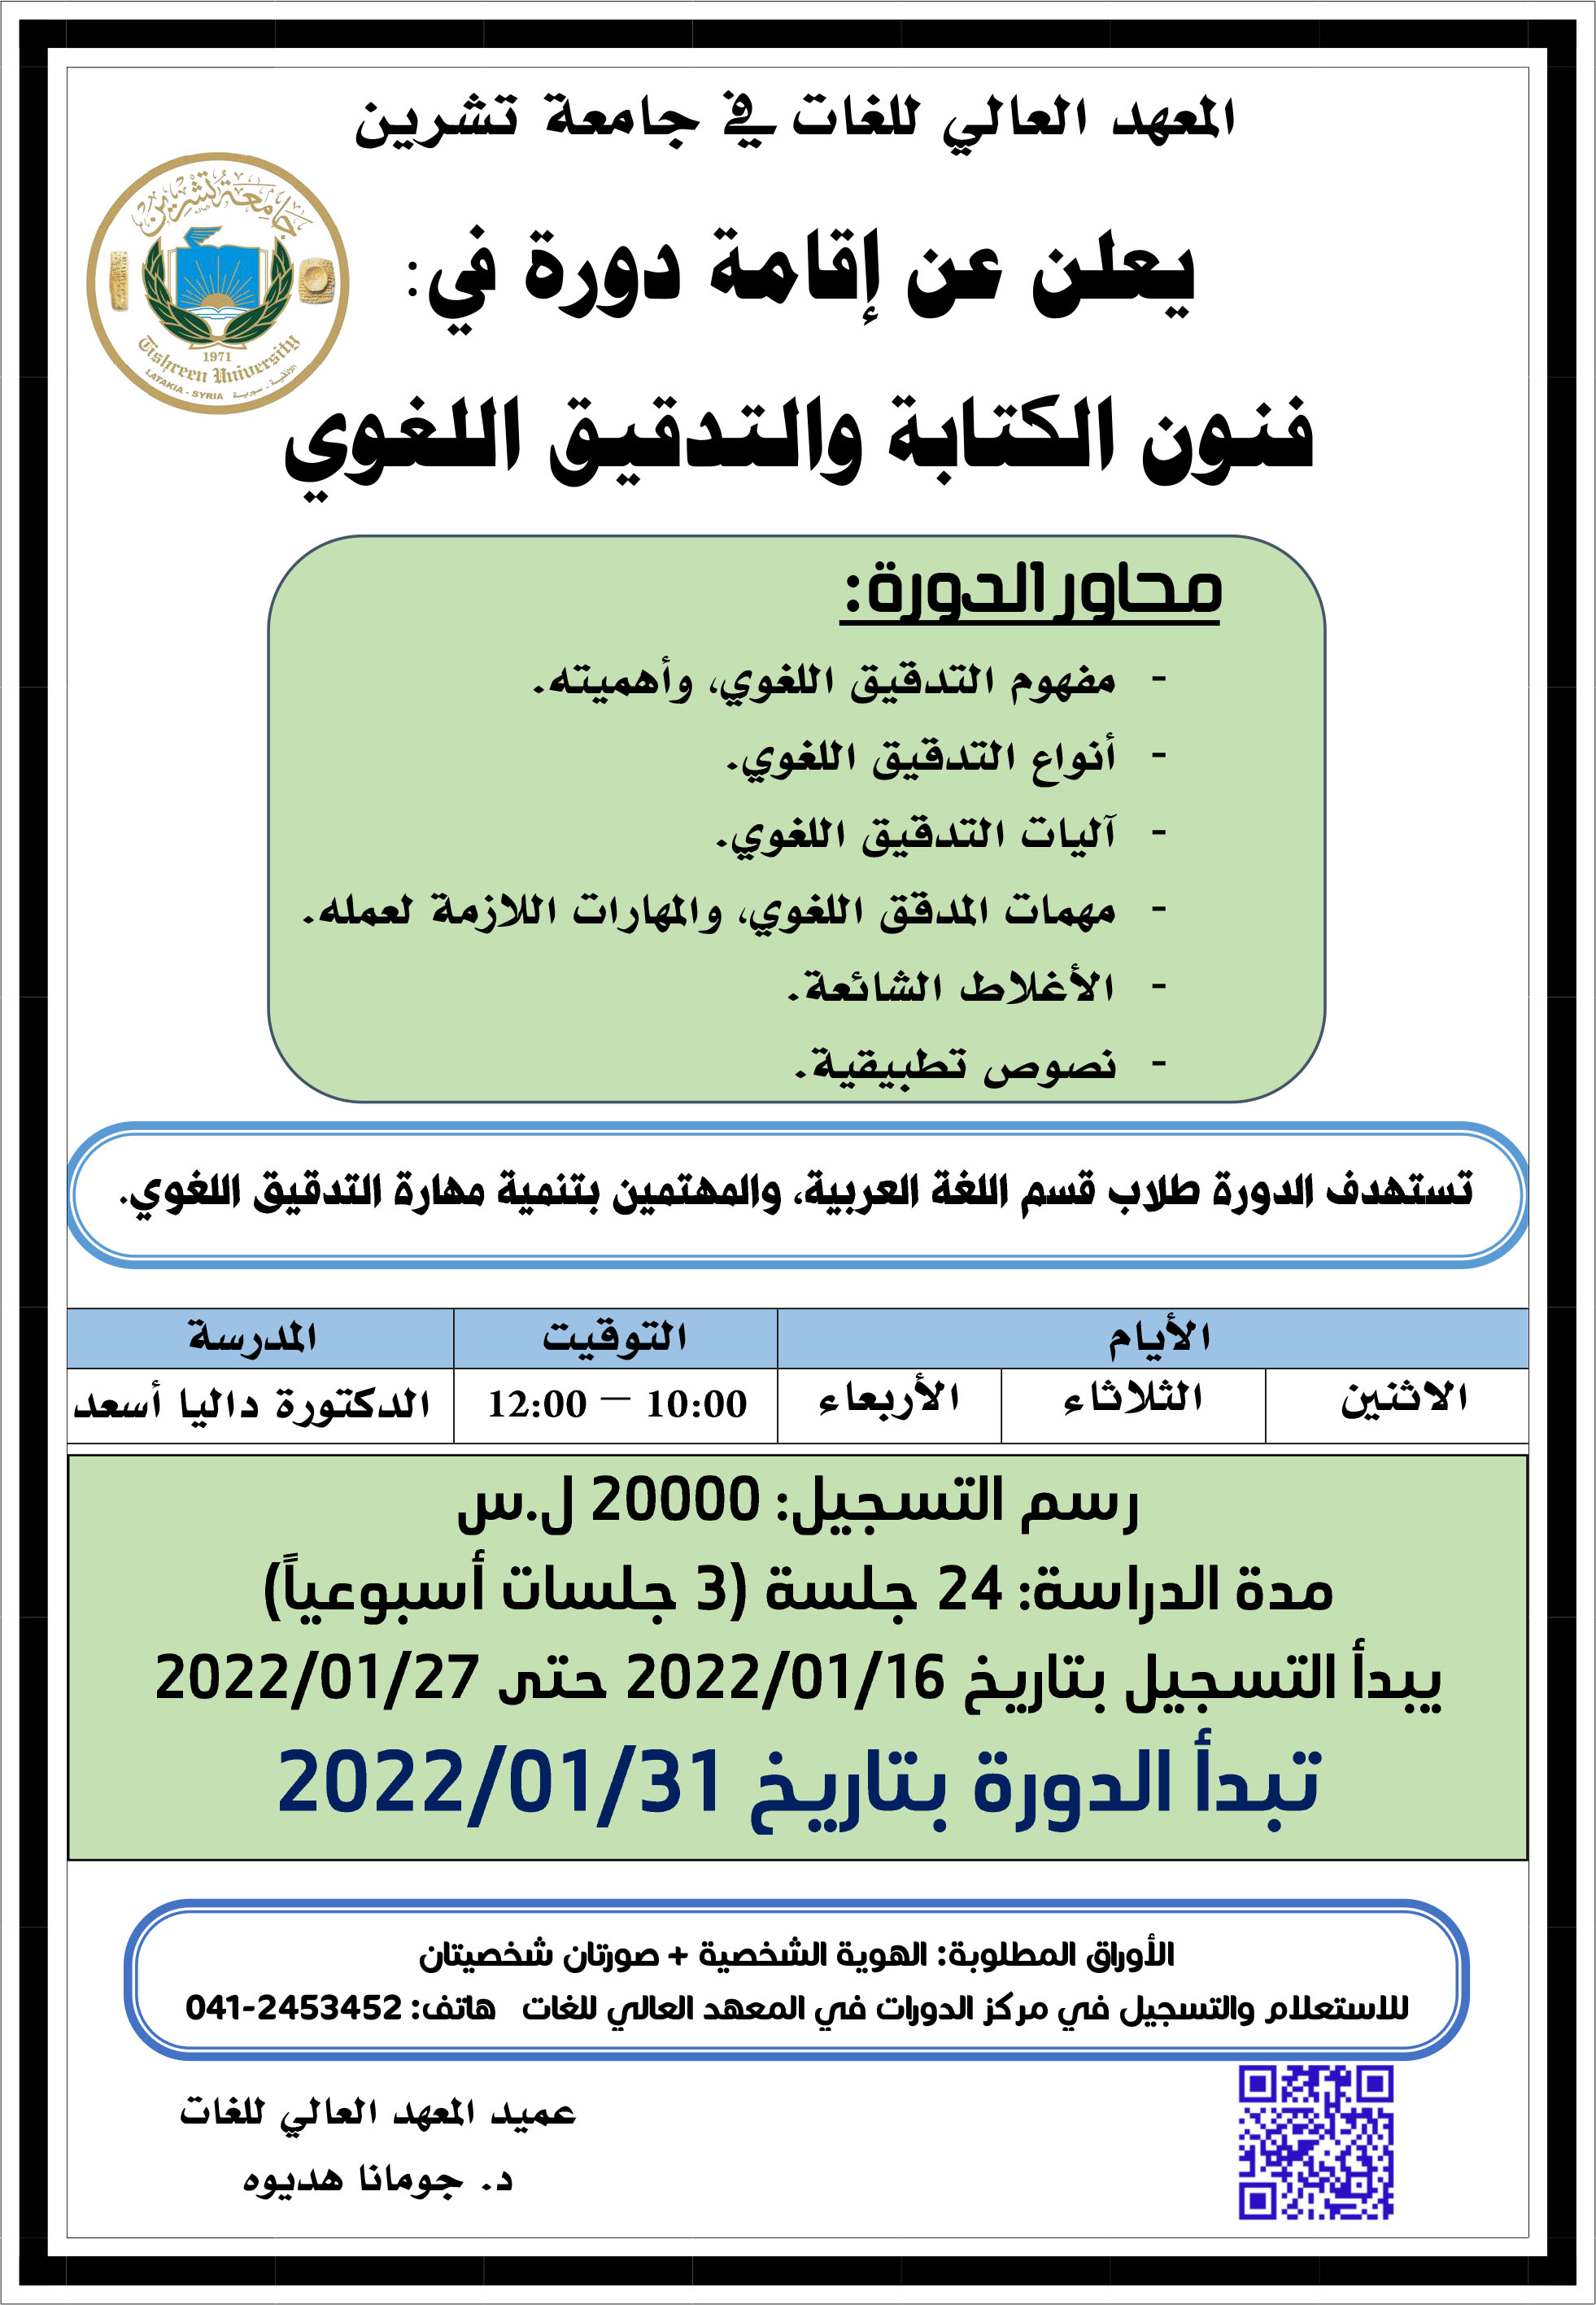 العهد العالي للغات يعلن عن إقامة دورة فنون الكتابة والتدقيق اللغوي في اللغة العربية التي تبدأ بتاريخ 31-01-2022